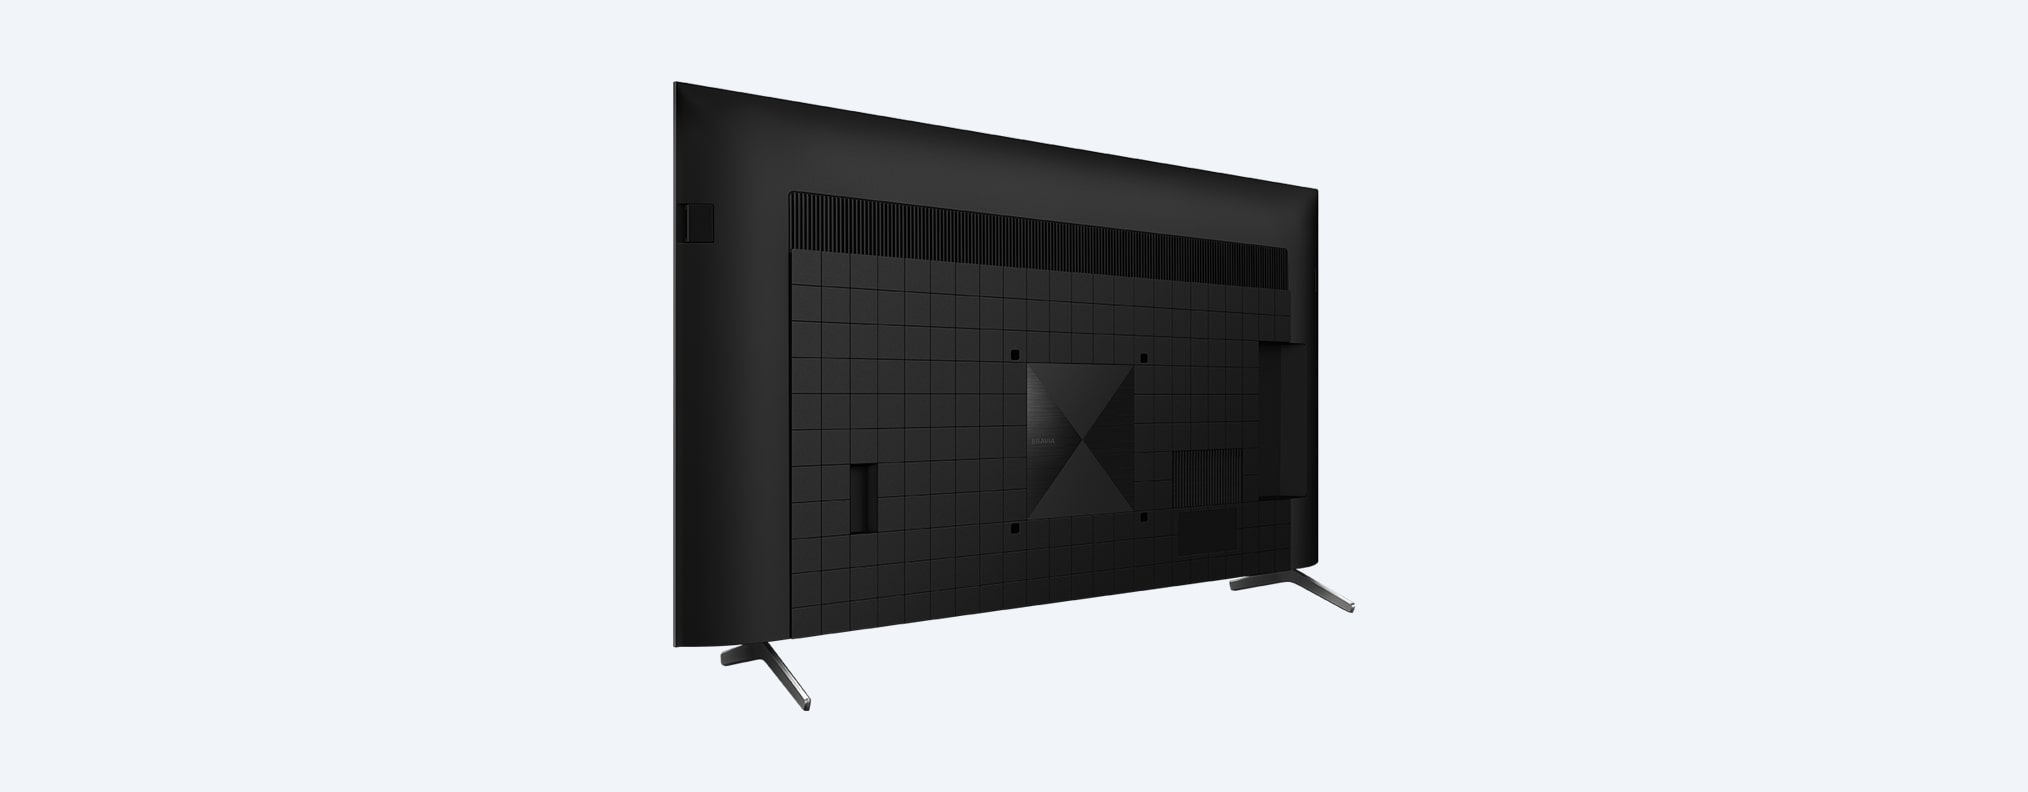 X90J | BRAVIA XR | Full Array LED | 4K Ultra HD | טווח דינמי גבוה (HDR) | טלוויזיה חכמה (Google TV)